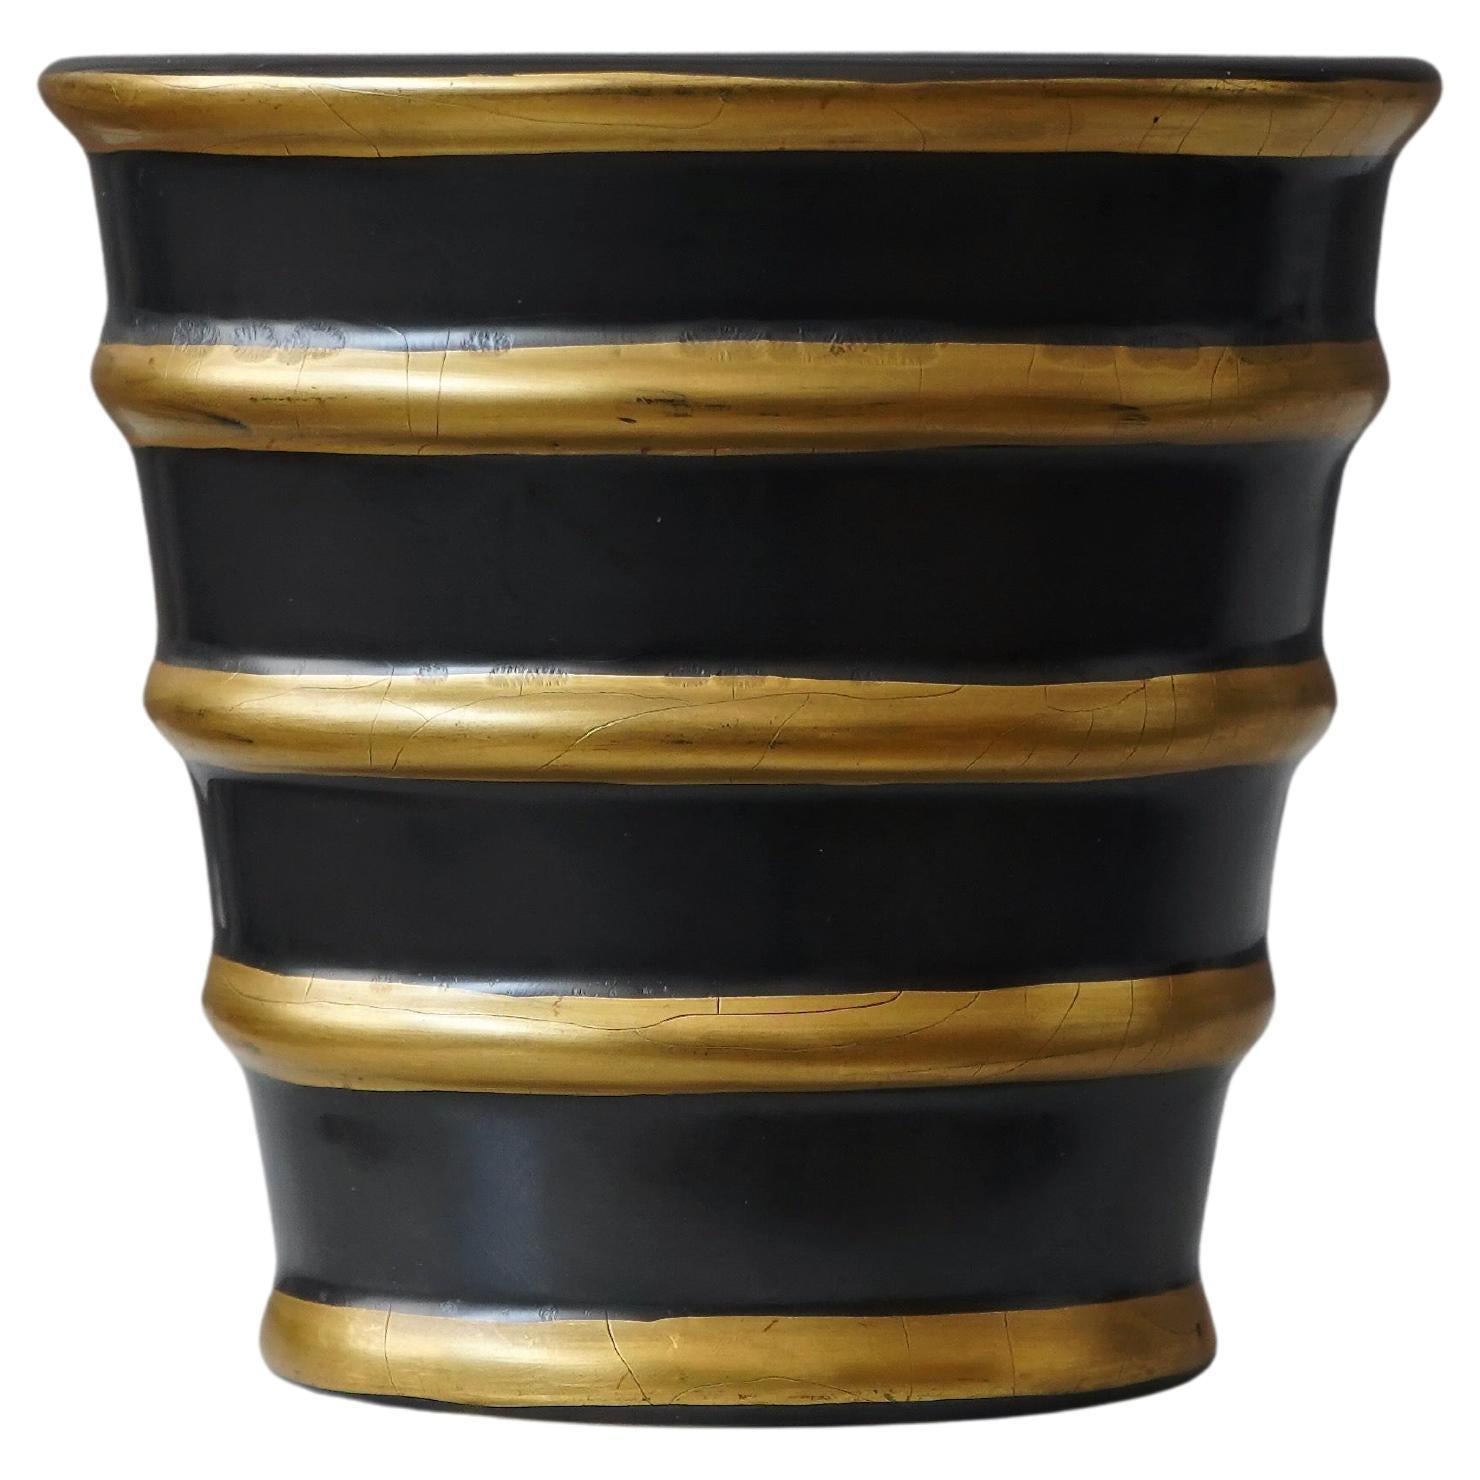 Gio Ponti Ceramic Vase for Richard Ginori San Cristoforo, Italy, cirka 1930